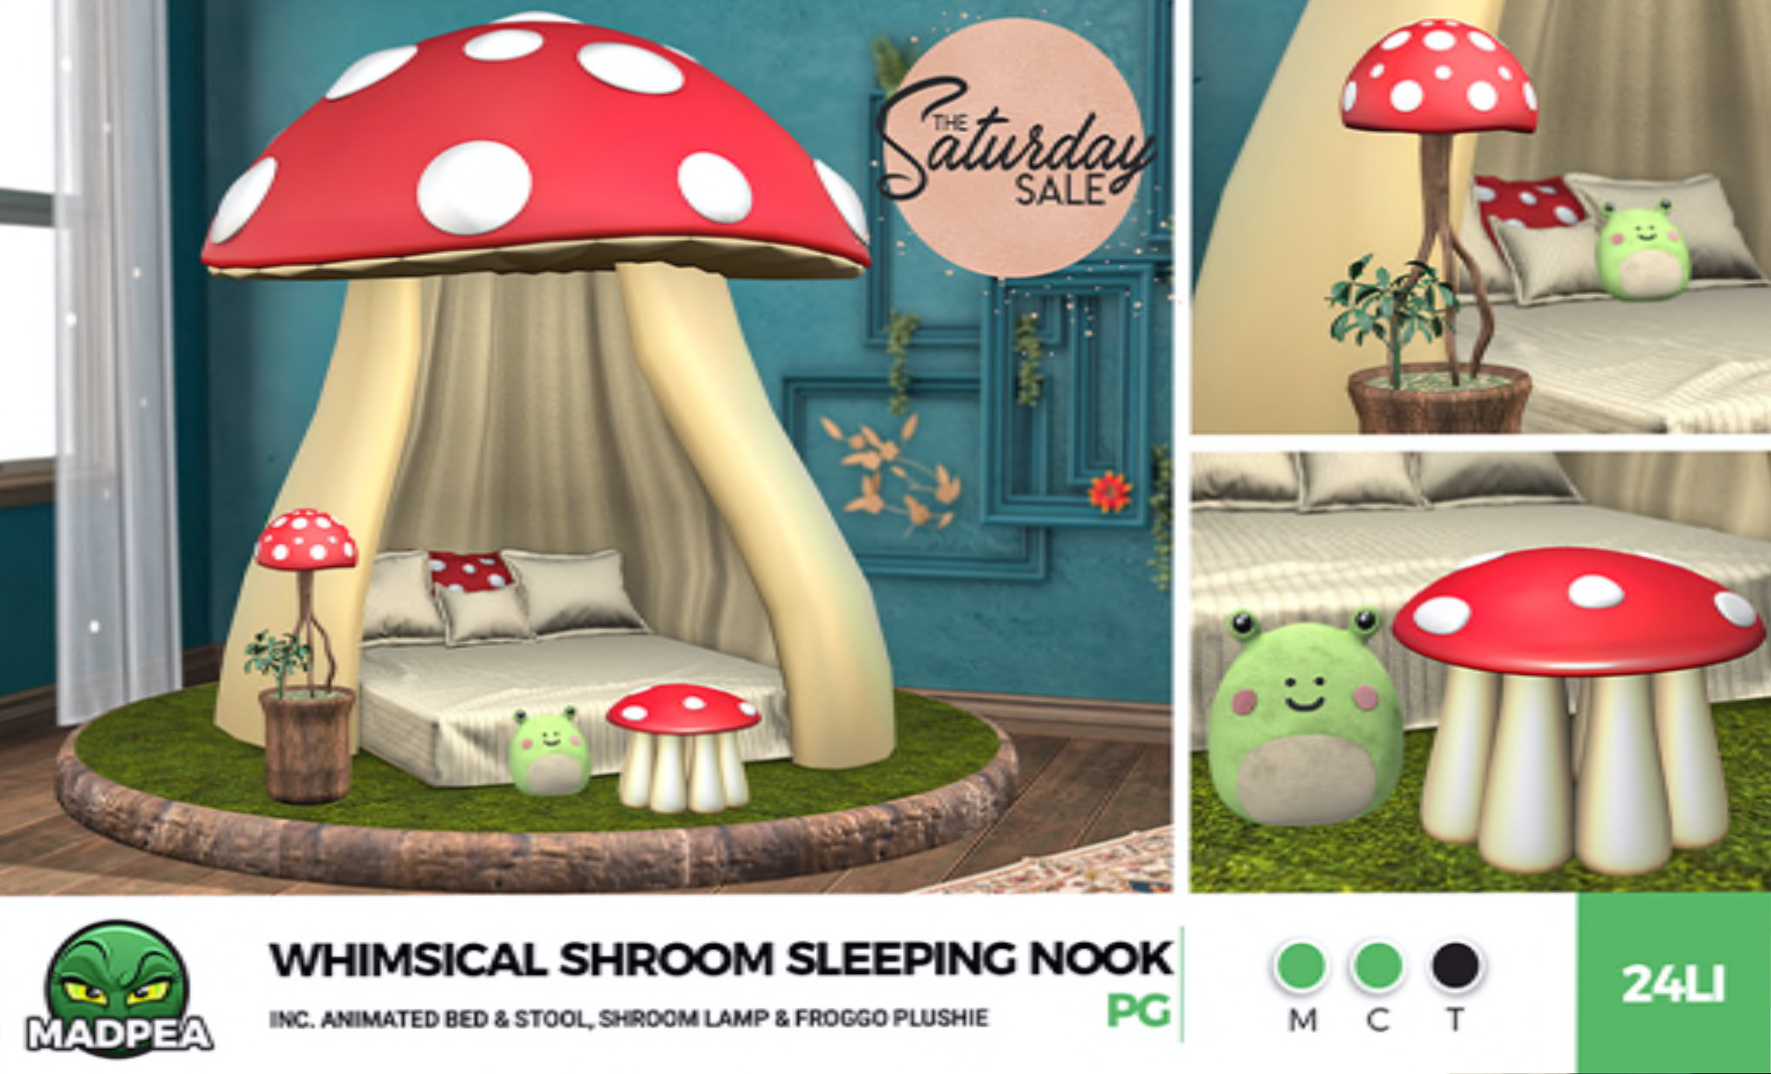 MadPea – Whimsical Shroom Sleeping Nook